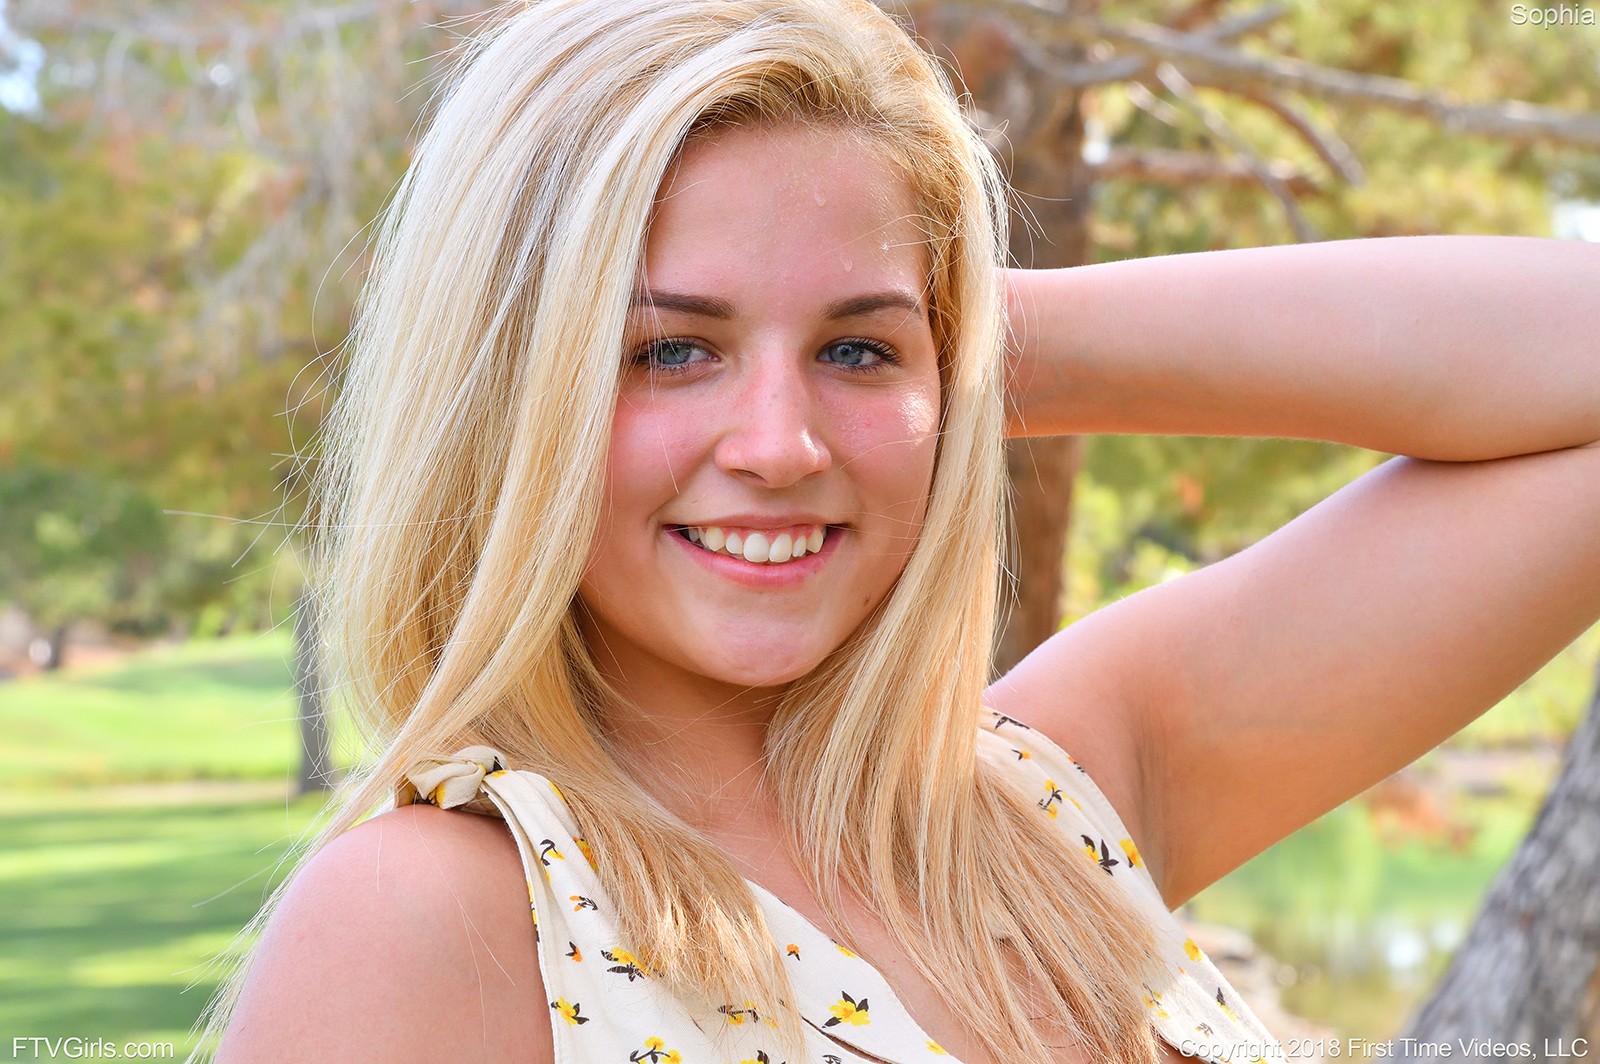 Blonde Stunner Sophia Ftv Gets Naughty Outdoors Ftv